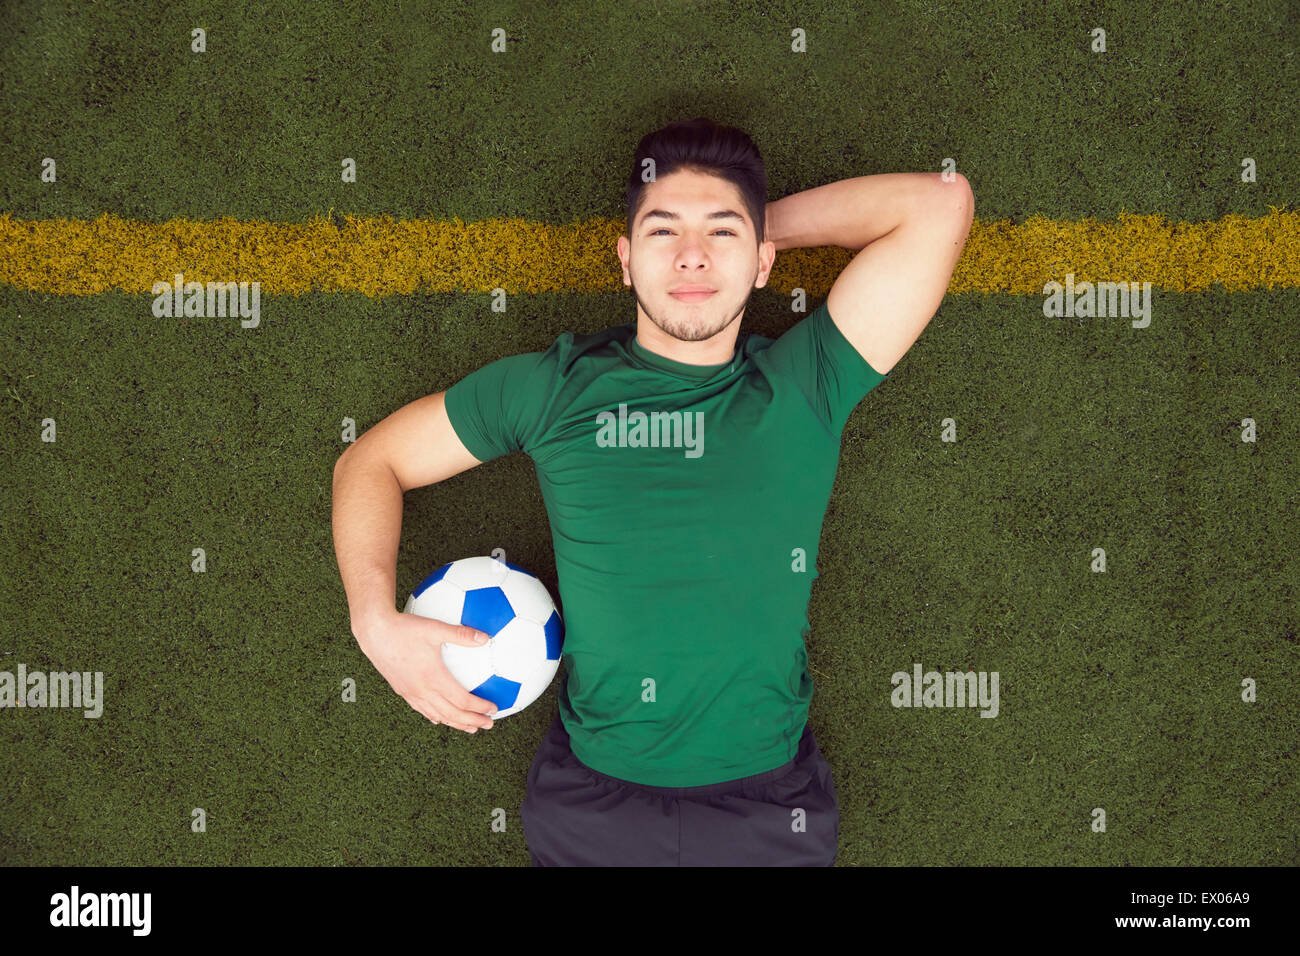 Obenliegende Porträt des jungen männlichen Fußballer am Fußballplatz liegen Stockfoto